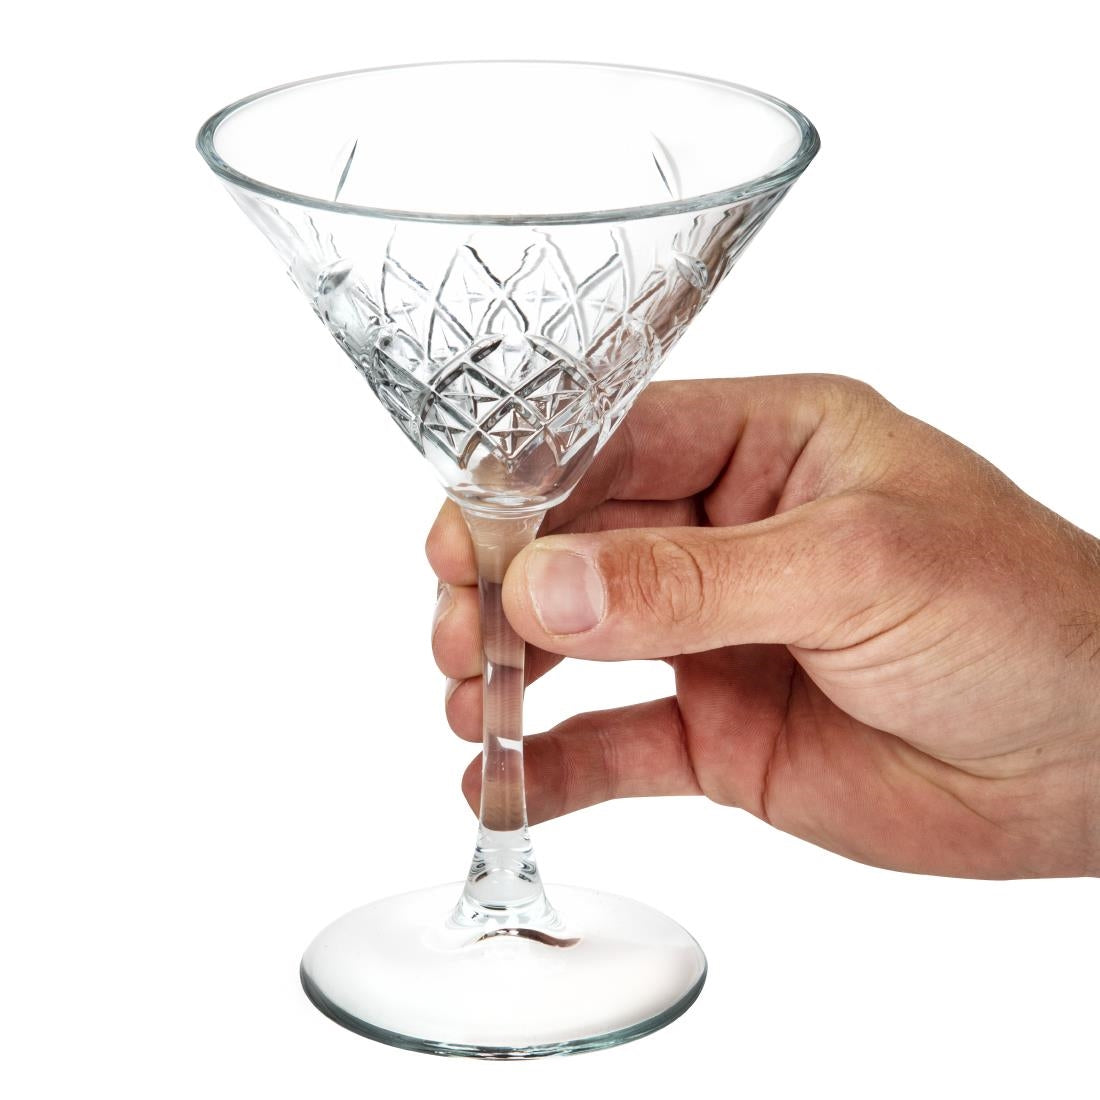 Utopia Timeless Vintage Martini Glasses 230ml (Pack of 12)